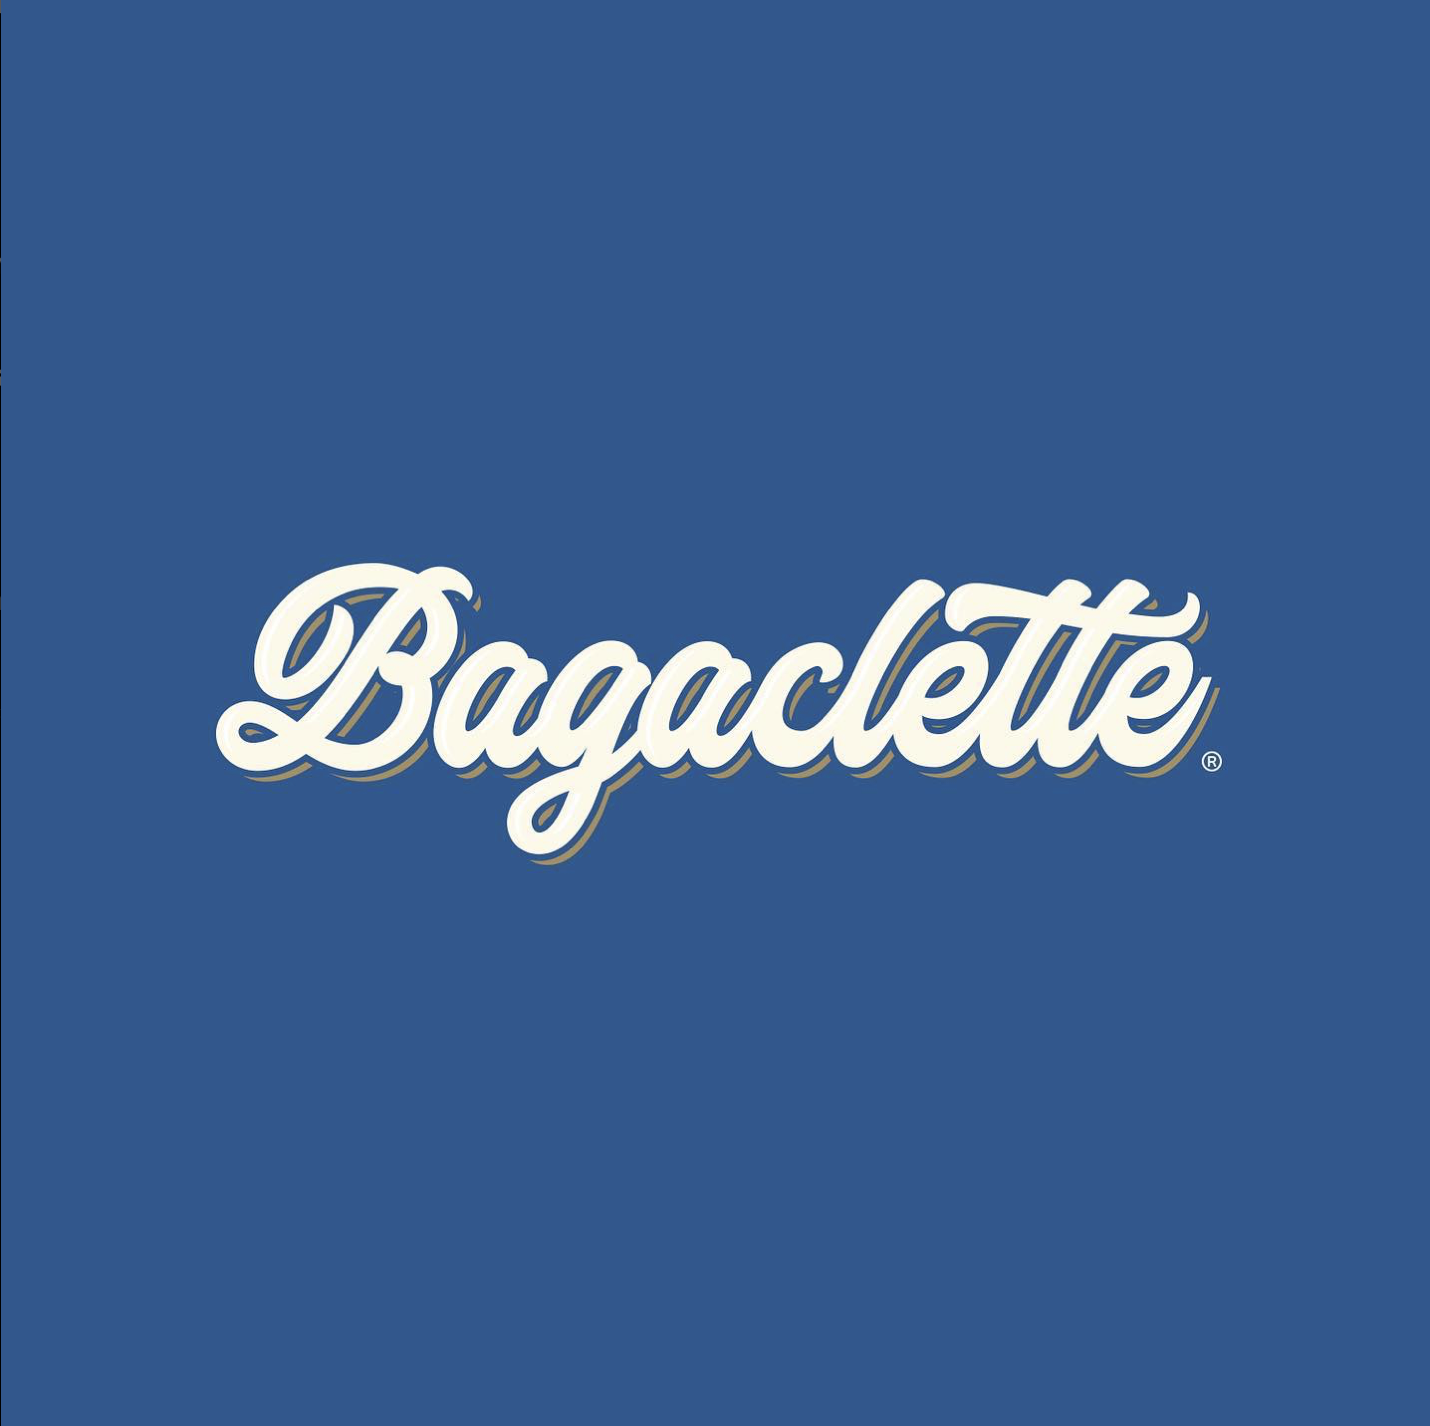 Logo de la empresa Bagaclette